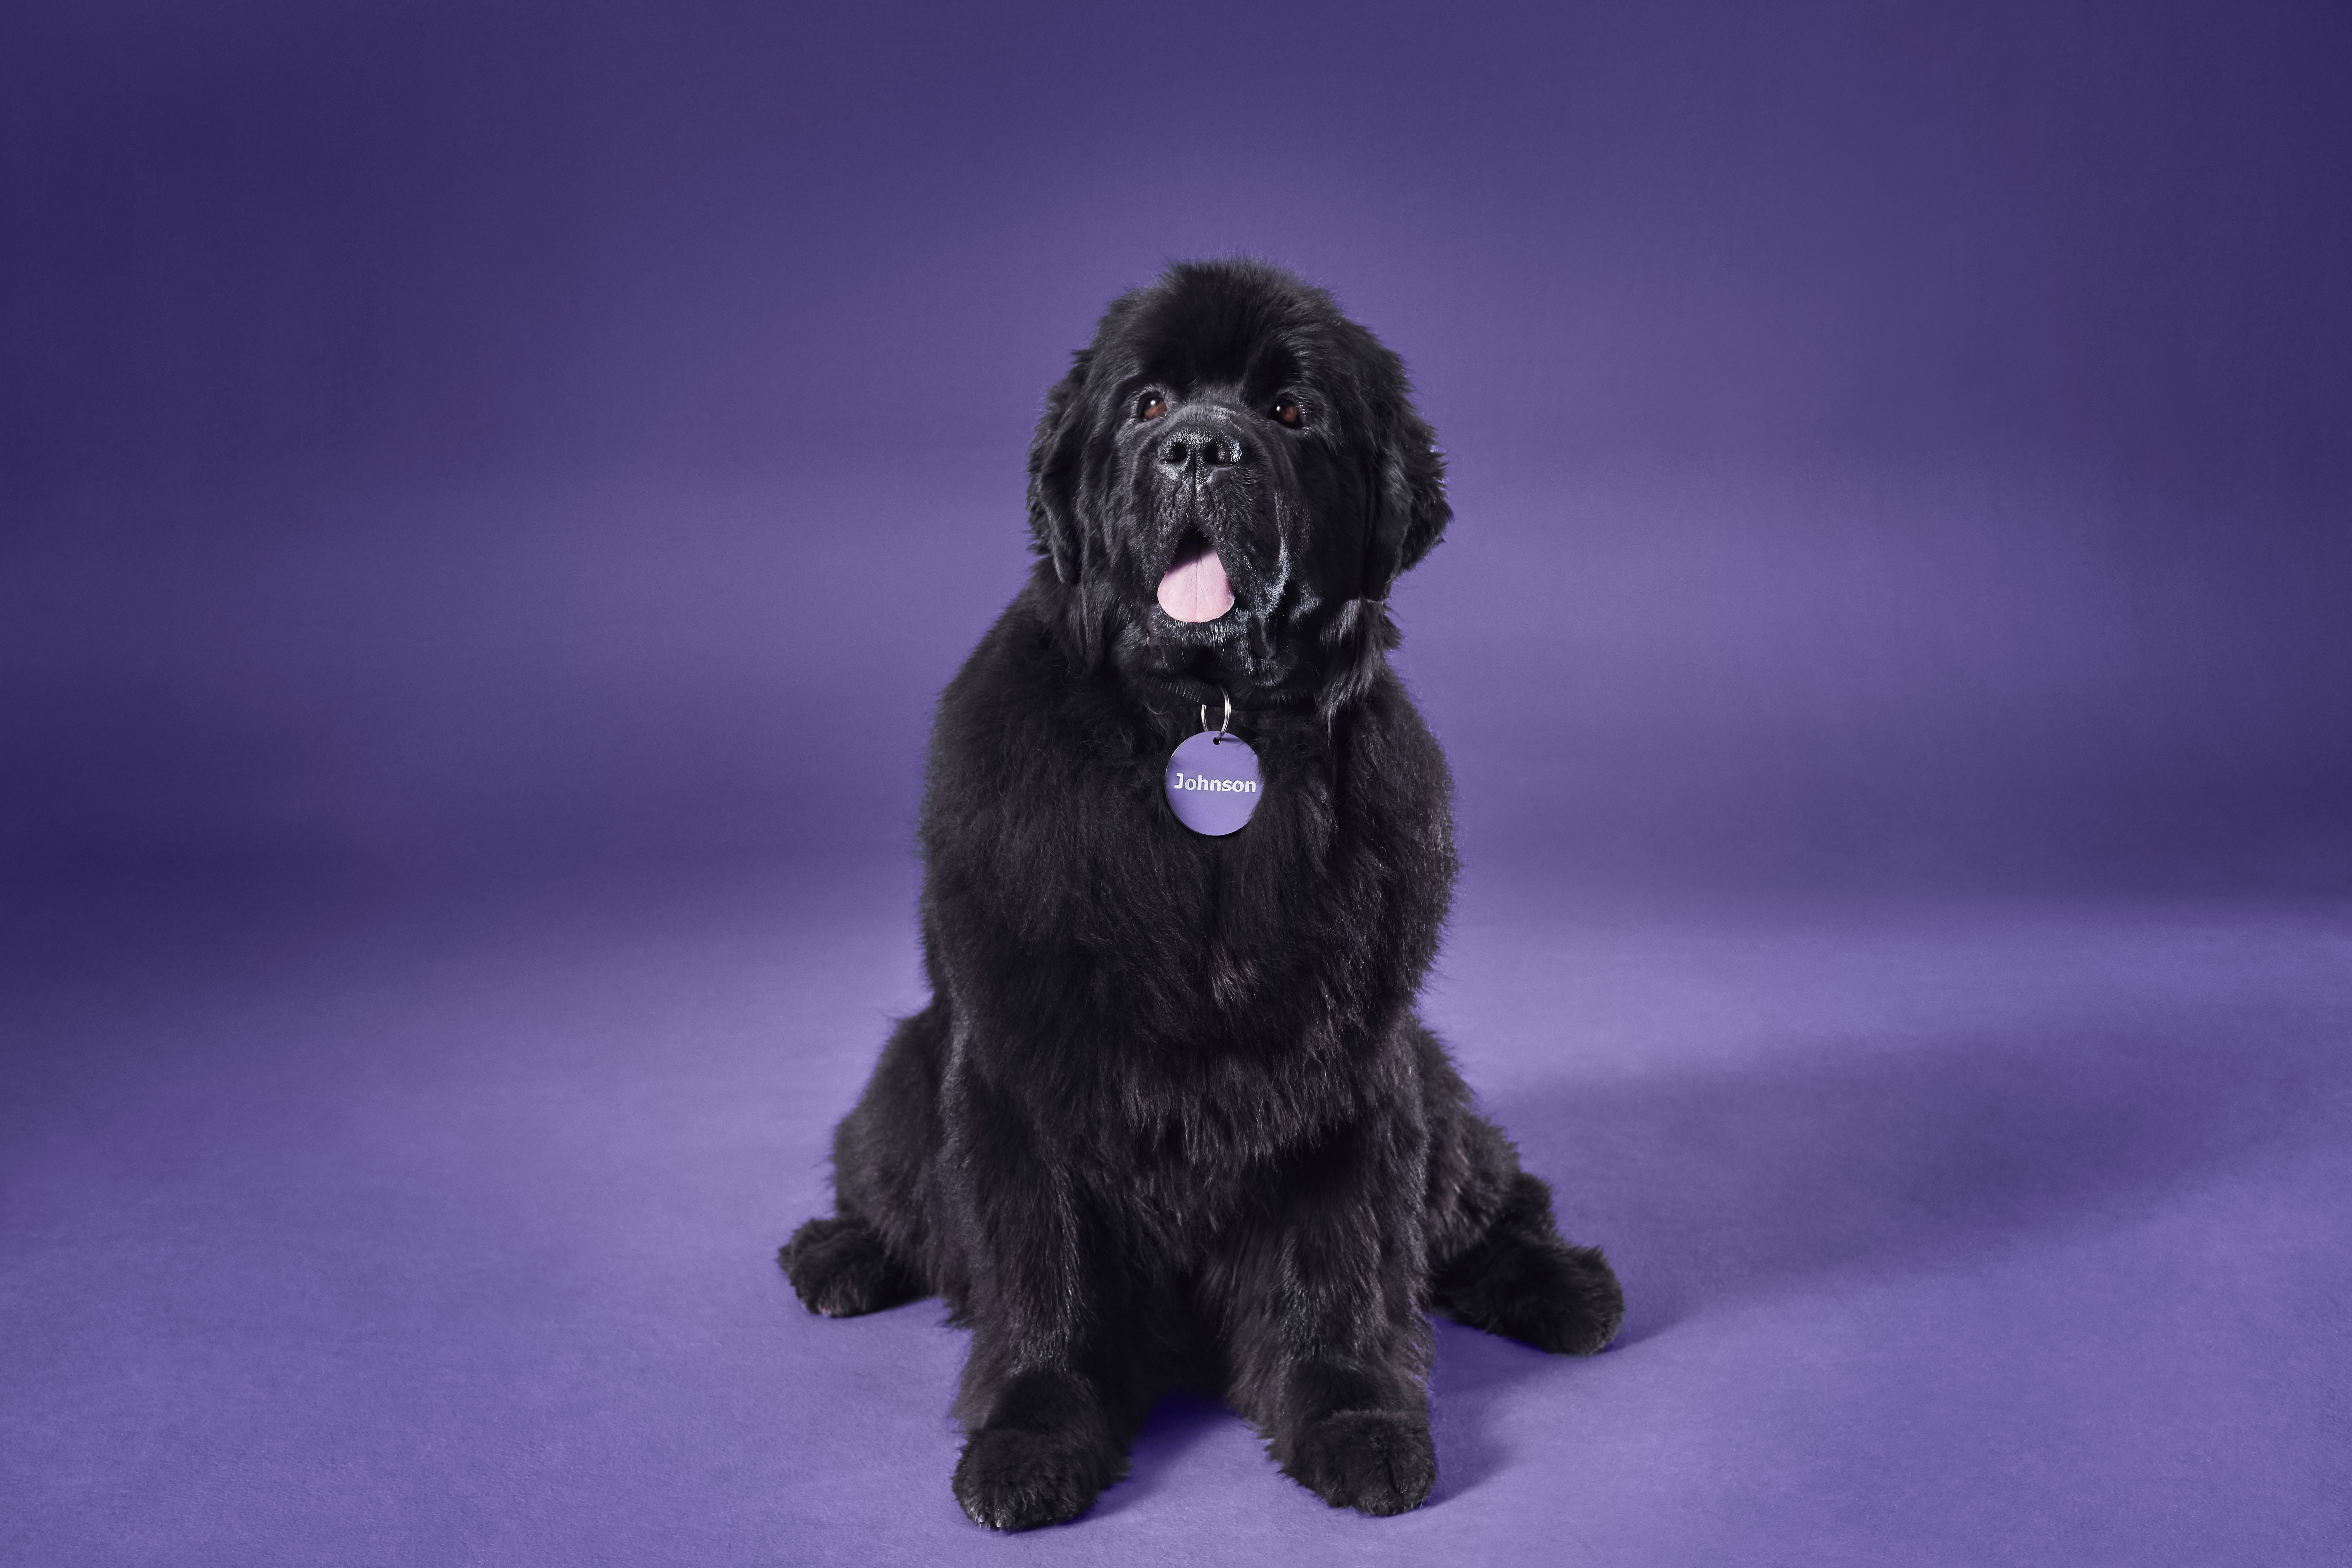 L’ambassadeur de la marque Johnson Insurance – un gros chien au pelage noir avec au cou une médaille violette arborant le nom Johnson.